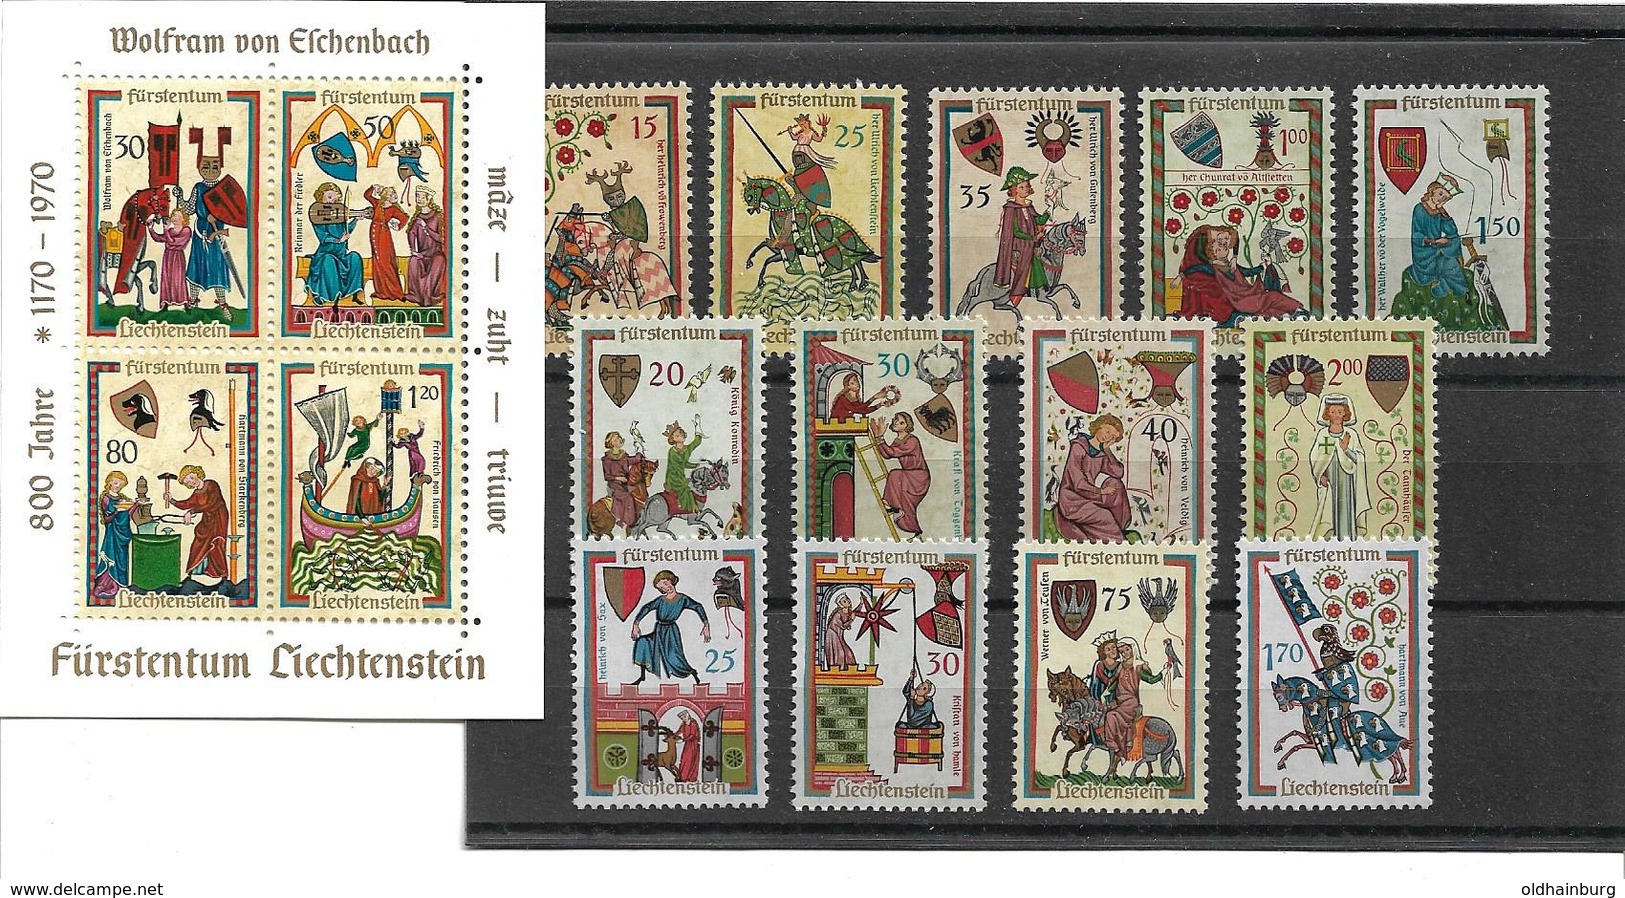 1559i: Mittelalterliche Trachten, ** Serie Mit Block Liechtenstein, Postpreis Ca. 12.- Euro - Textil